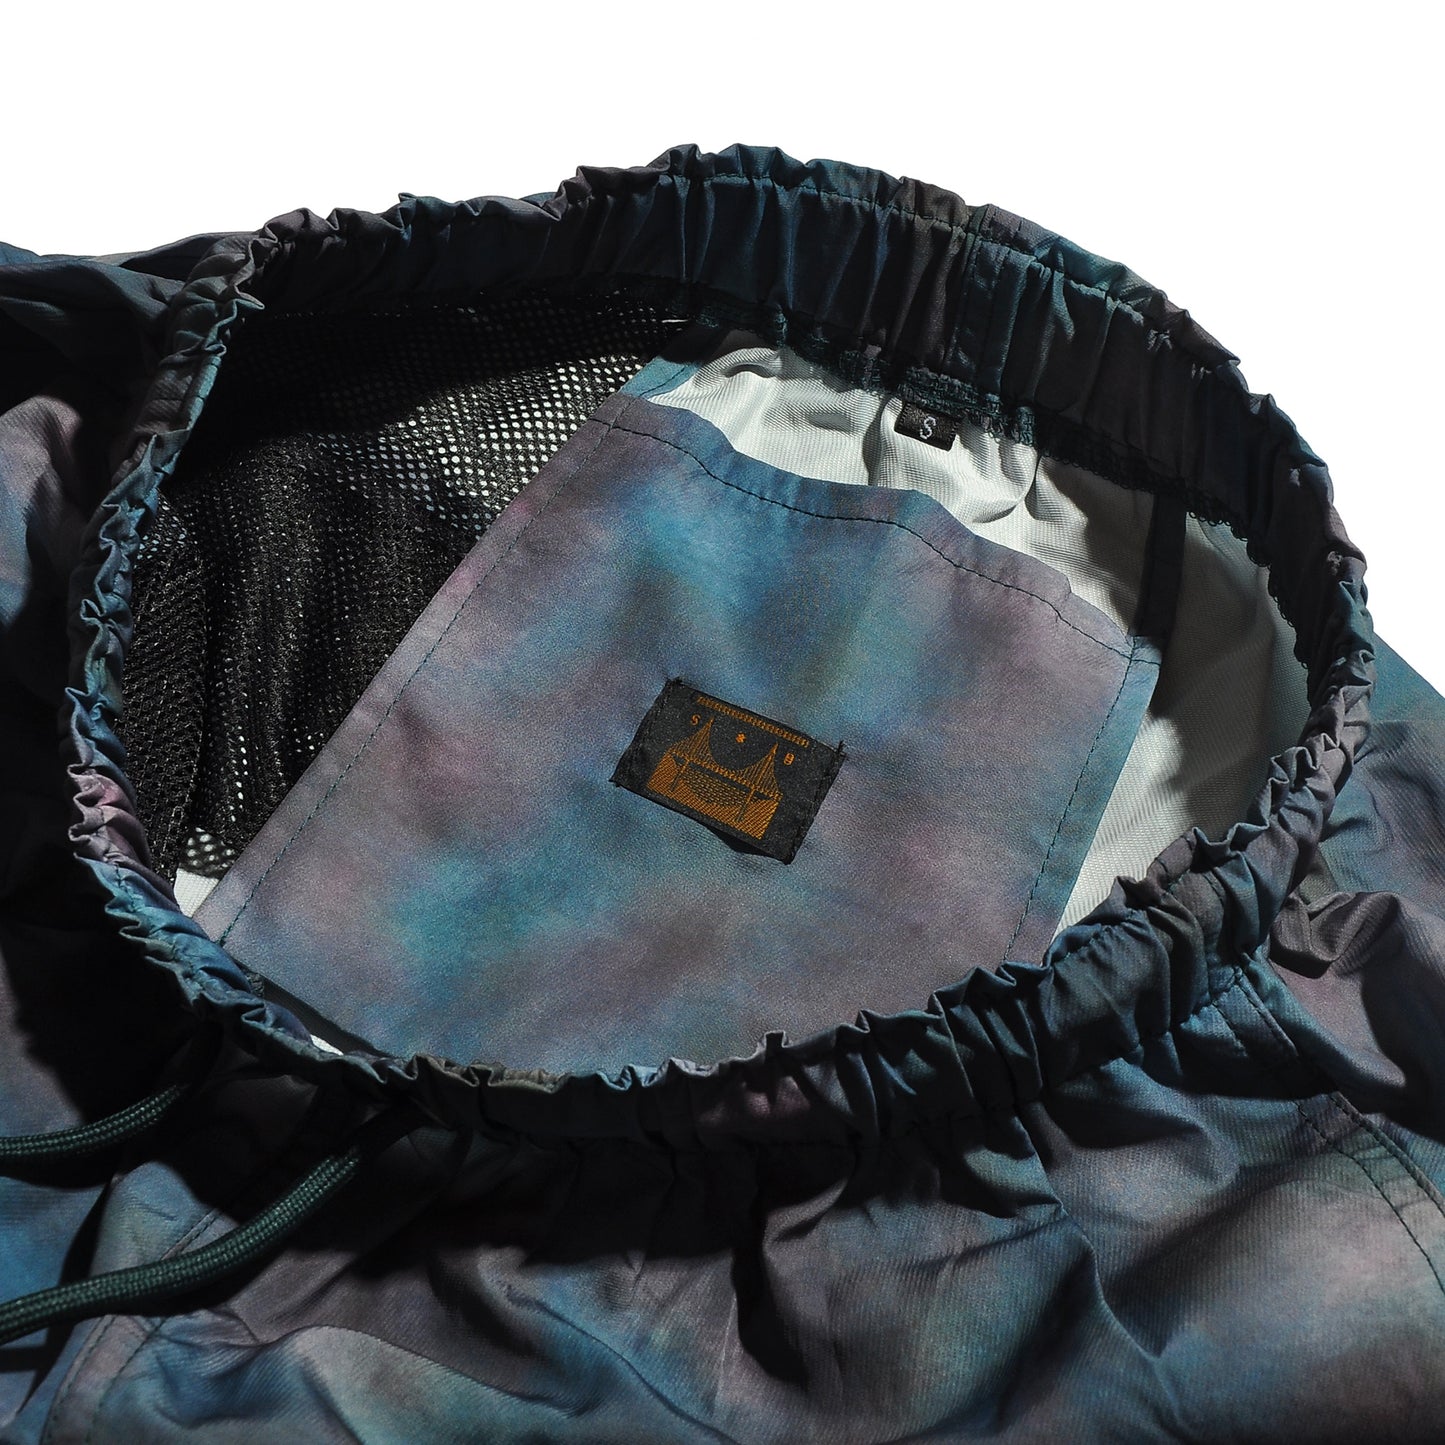 SUBLIME SB201-0615 Tie-dye Packable Beach Pants